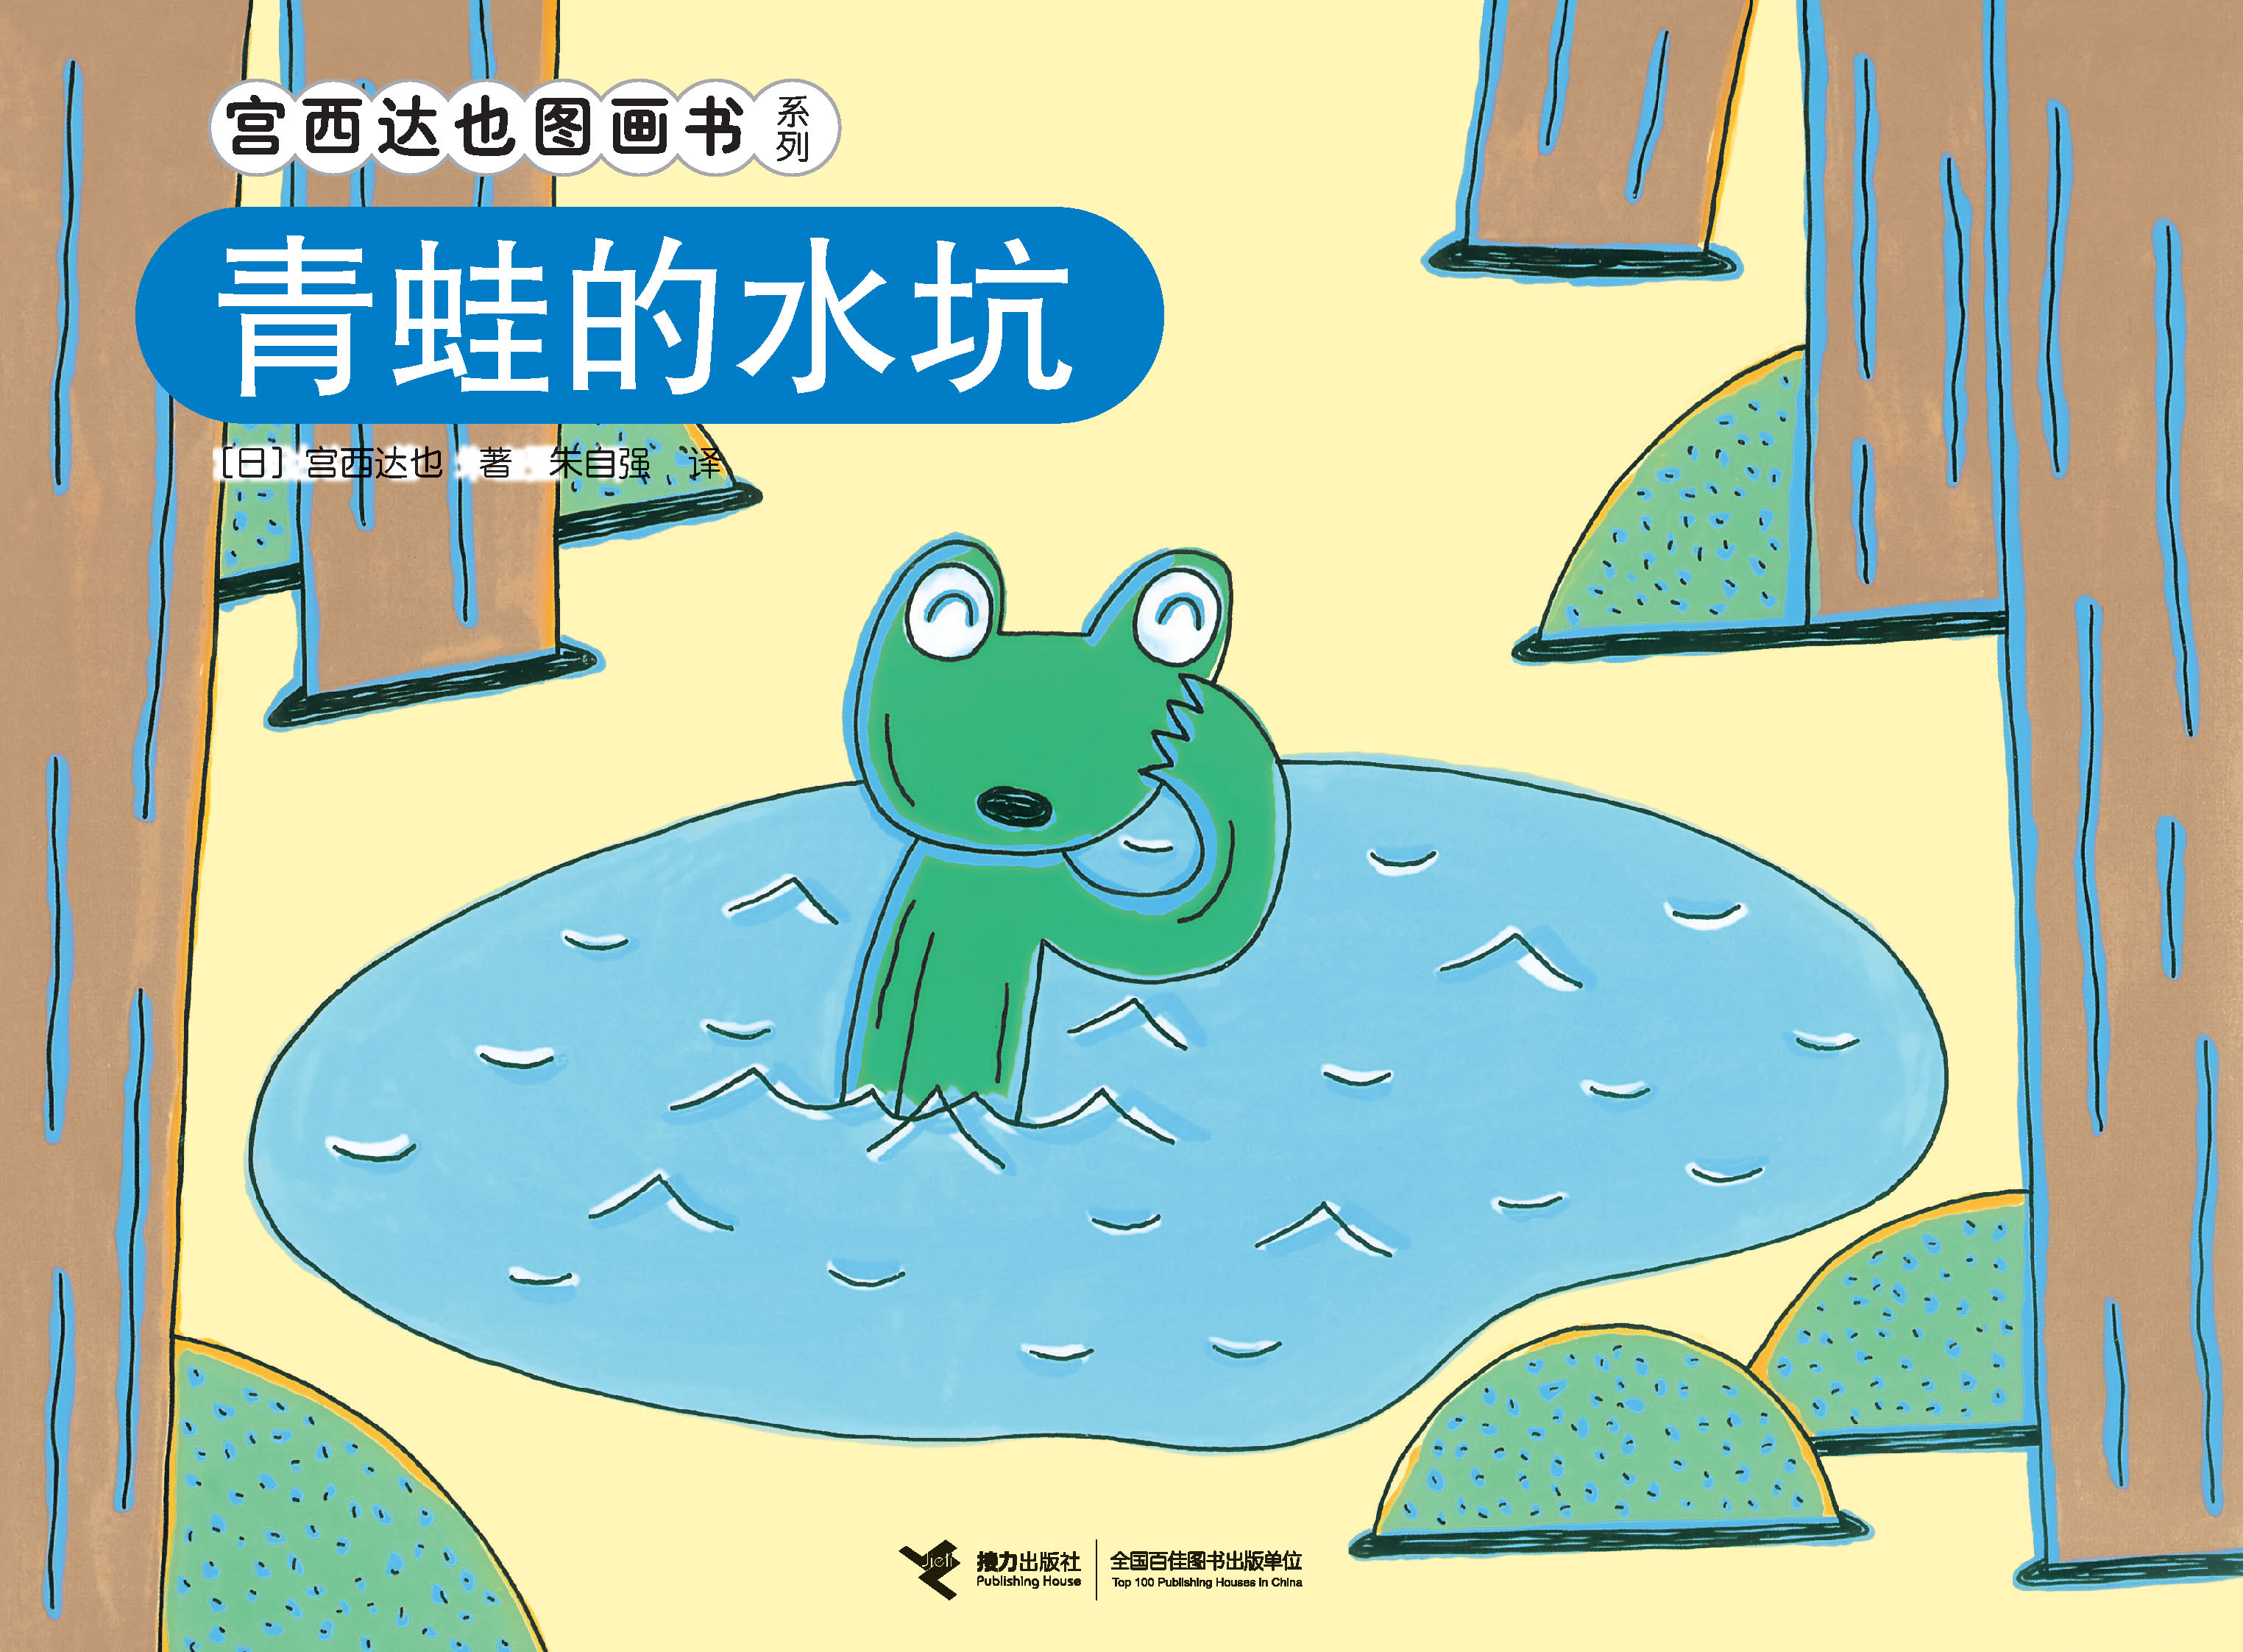 宫西达也图画书系列:青蛙的水坑